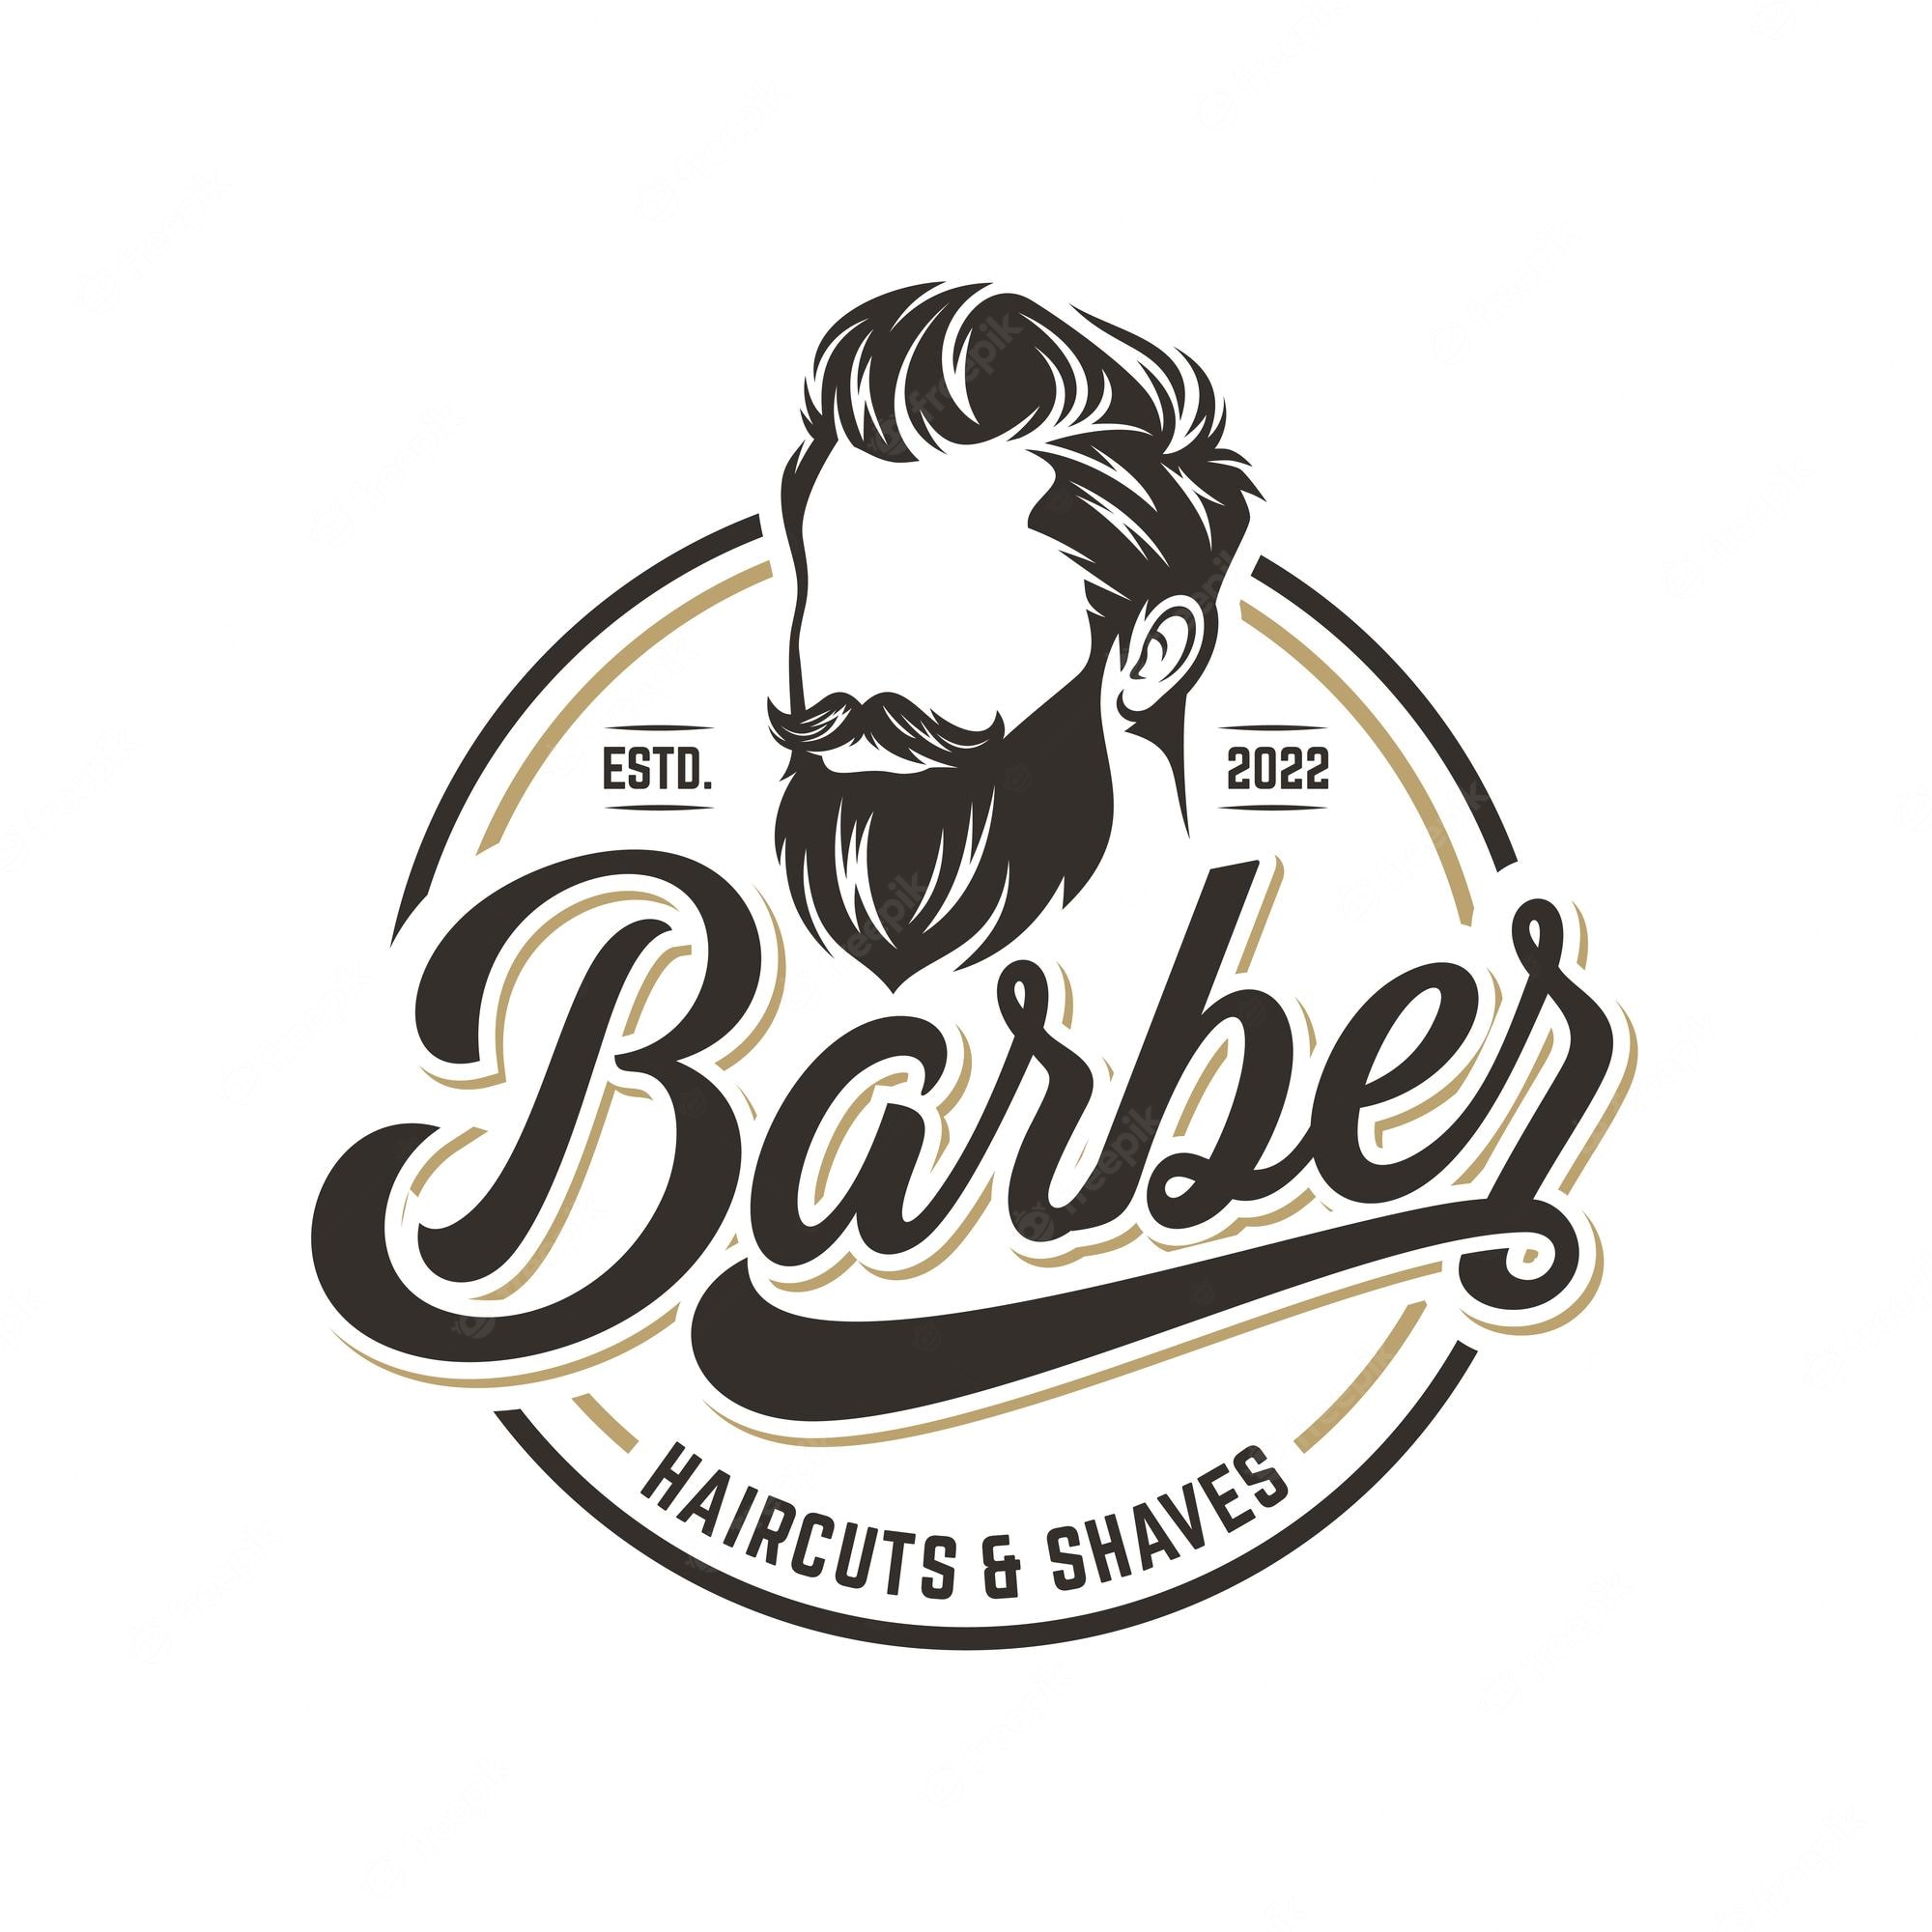 Barber Shop Logo Vectors & PSDs to Download